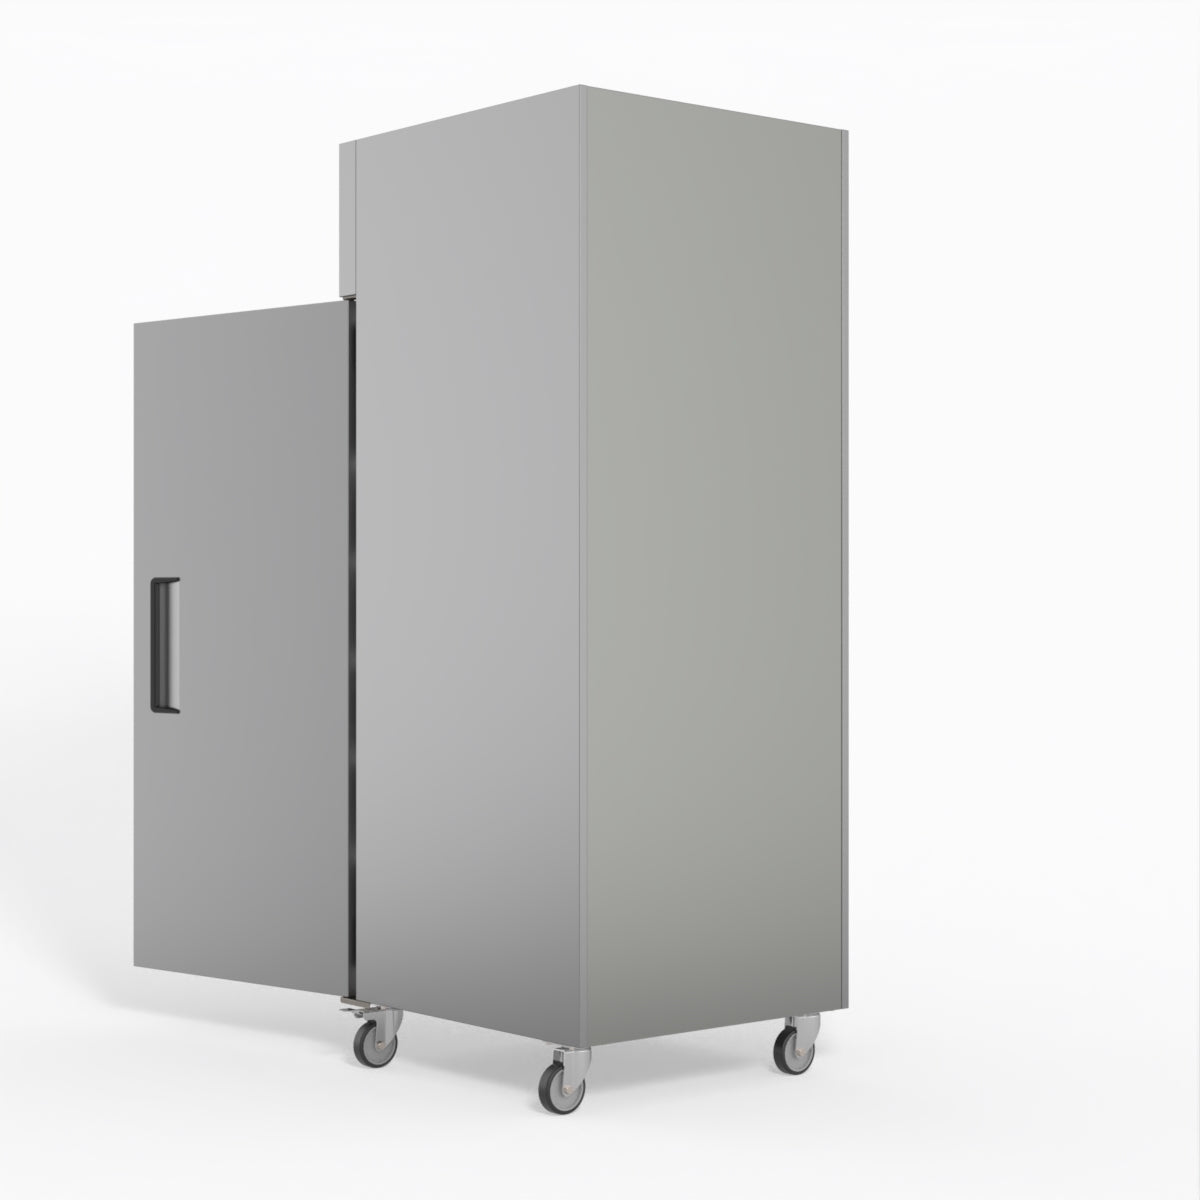 650 Litre Upright Stainless Steel Door Freezer